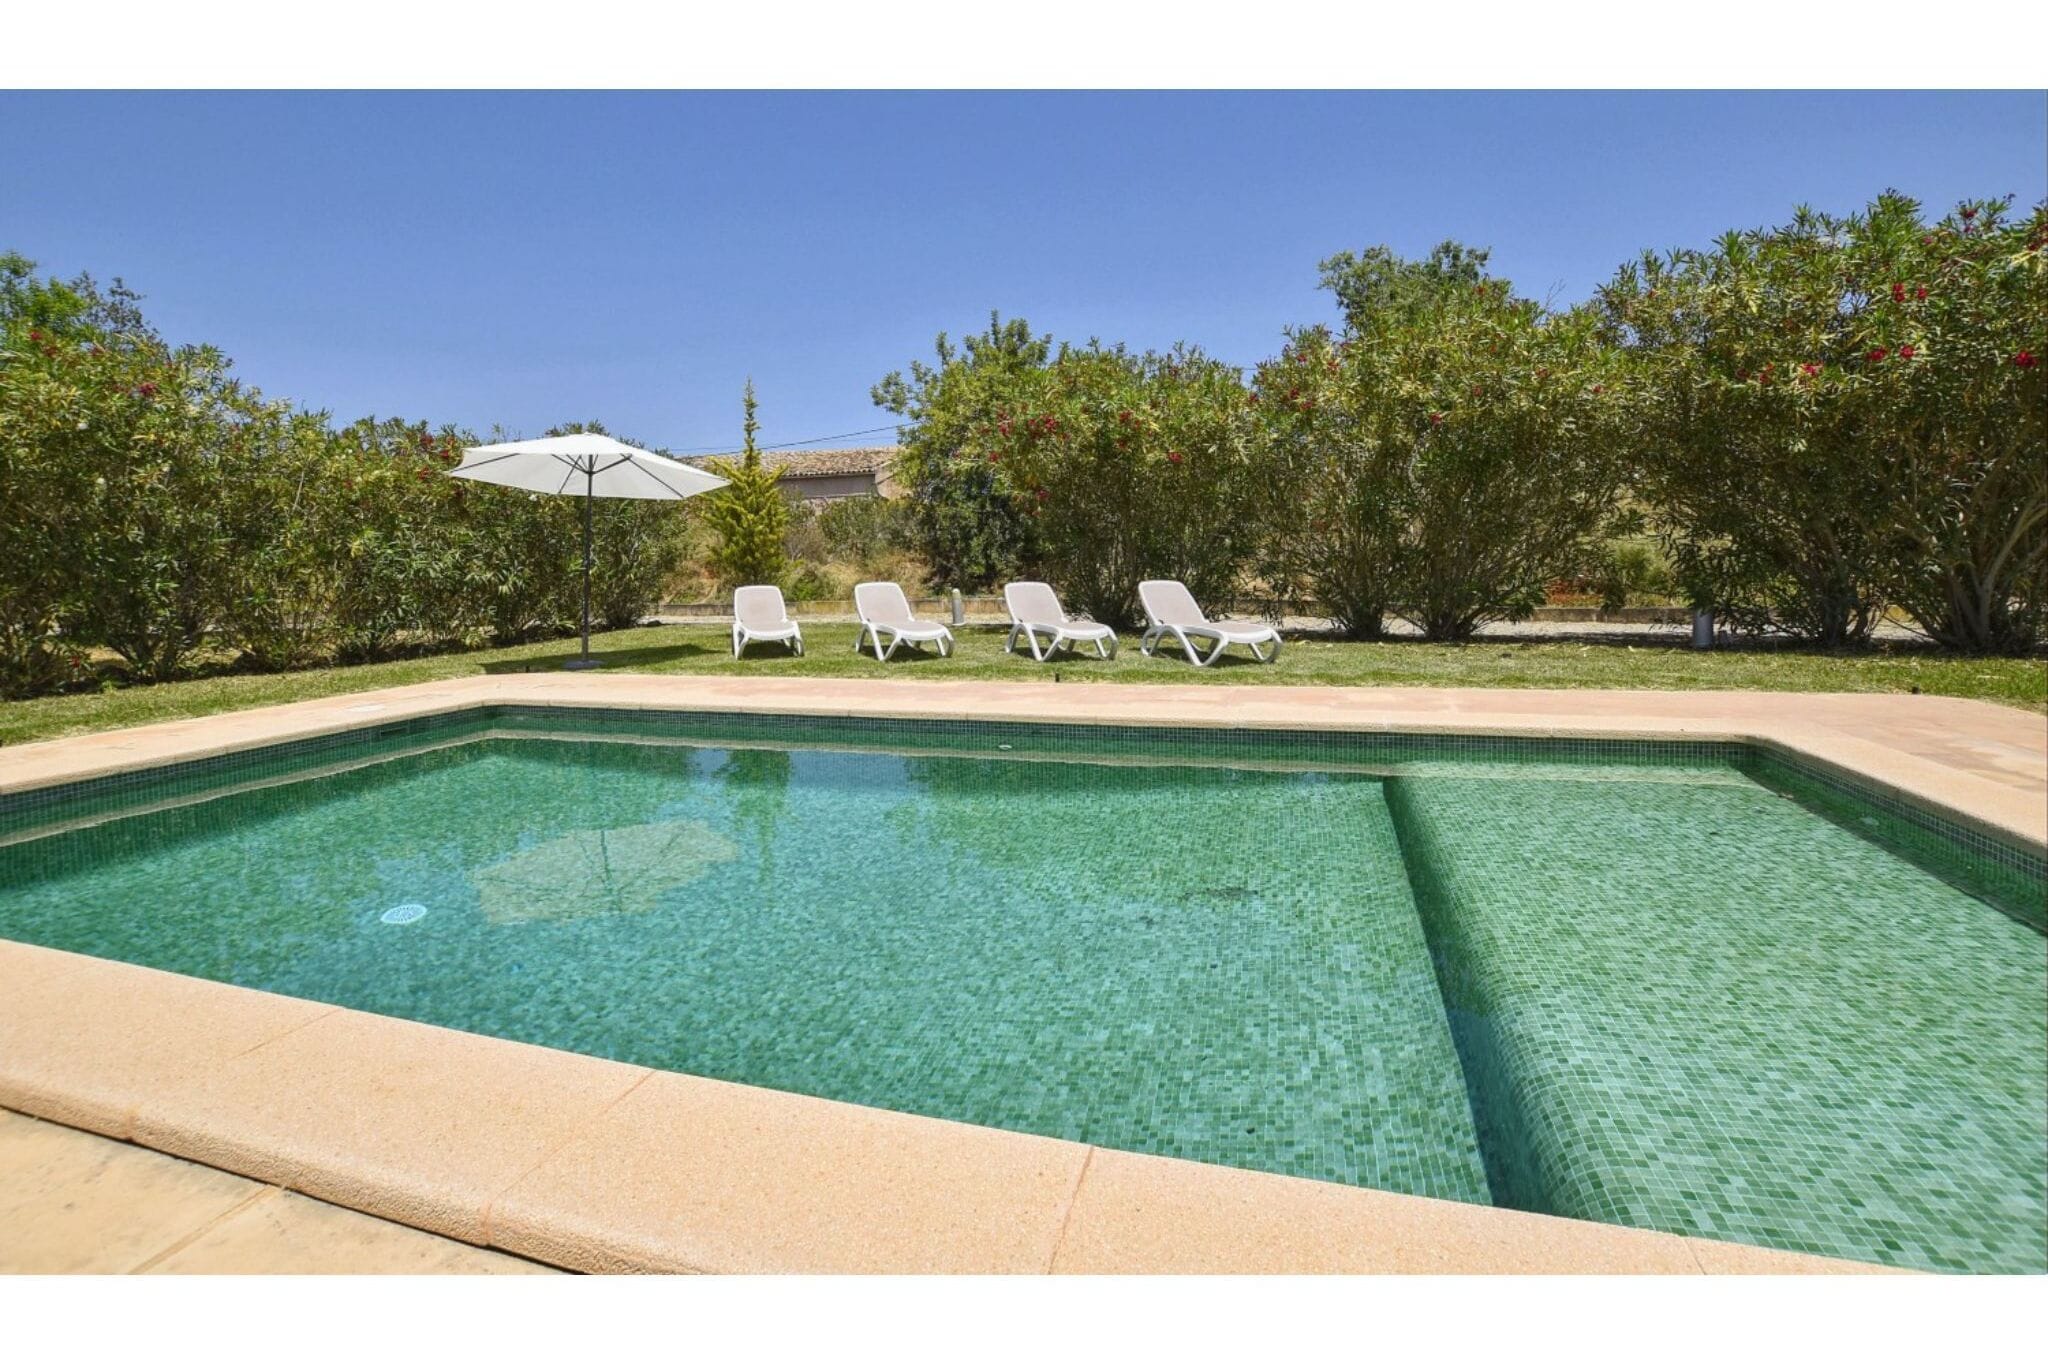 Maison de vacances spacieuse avec piscine privée à Búger